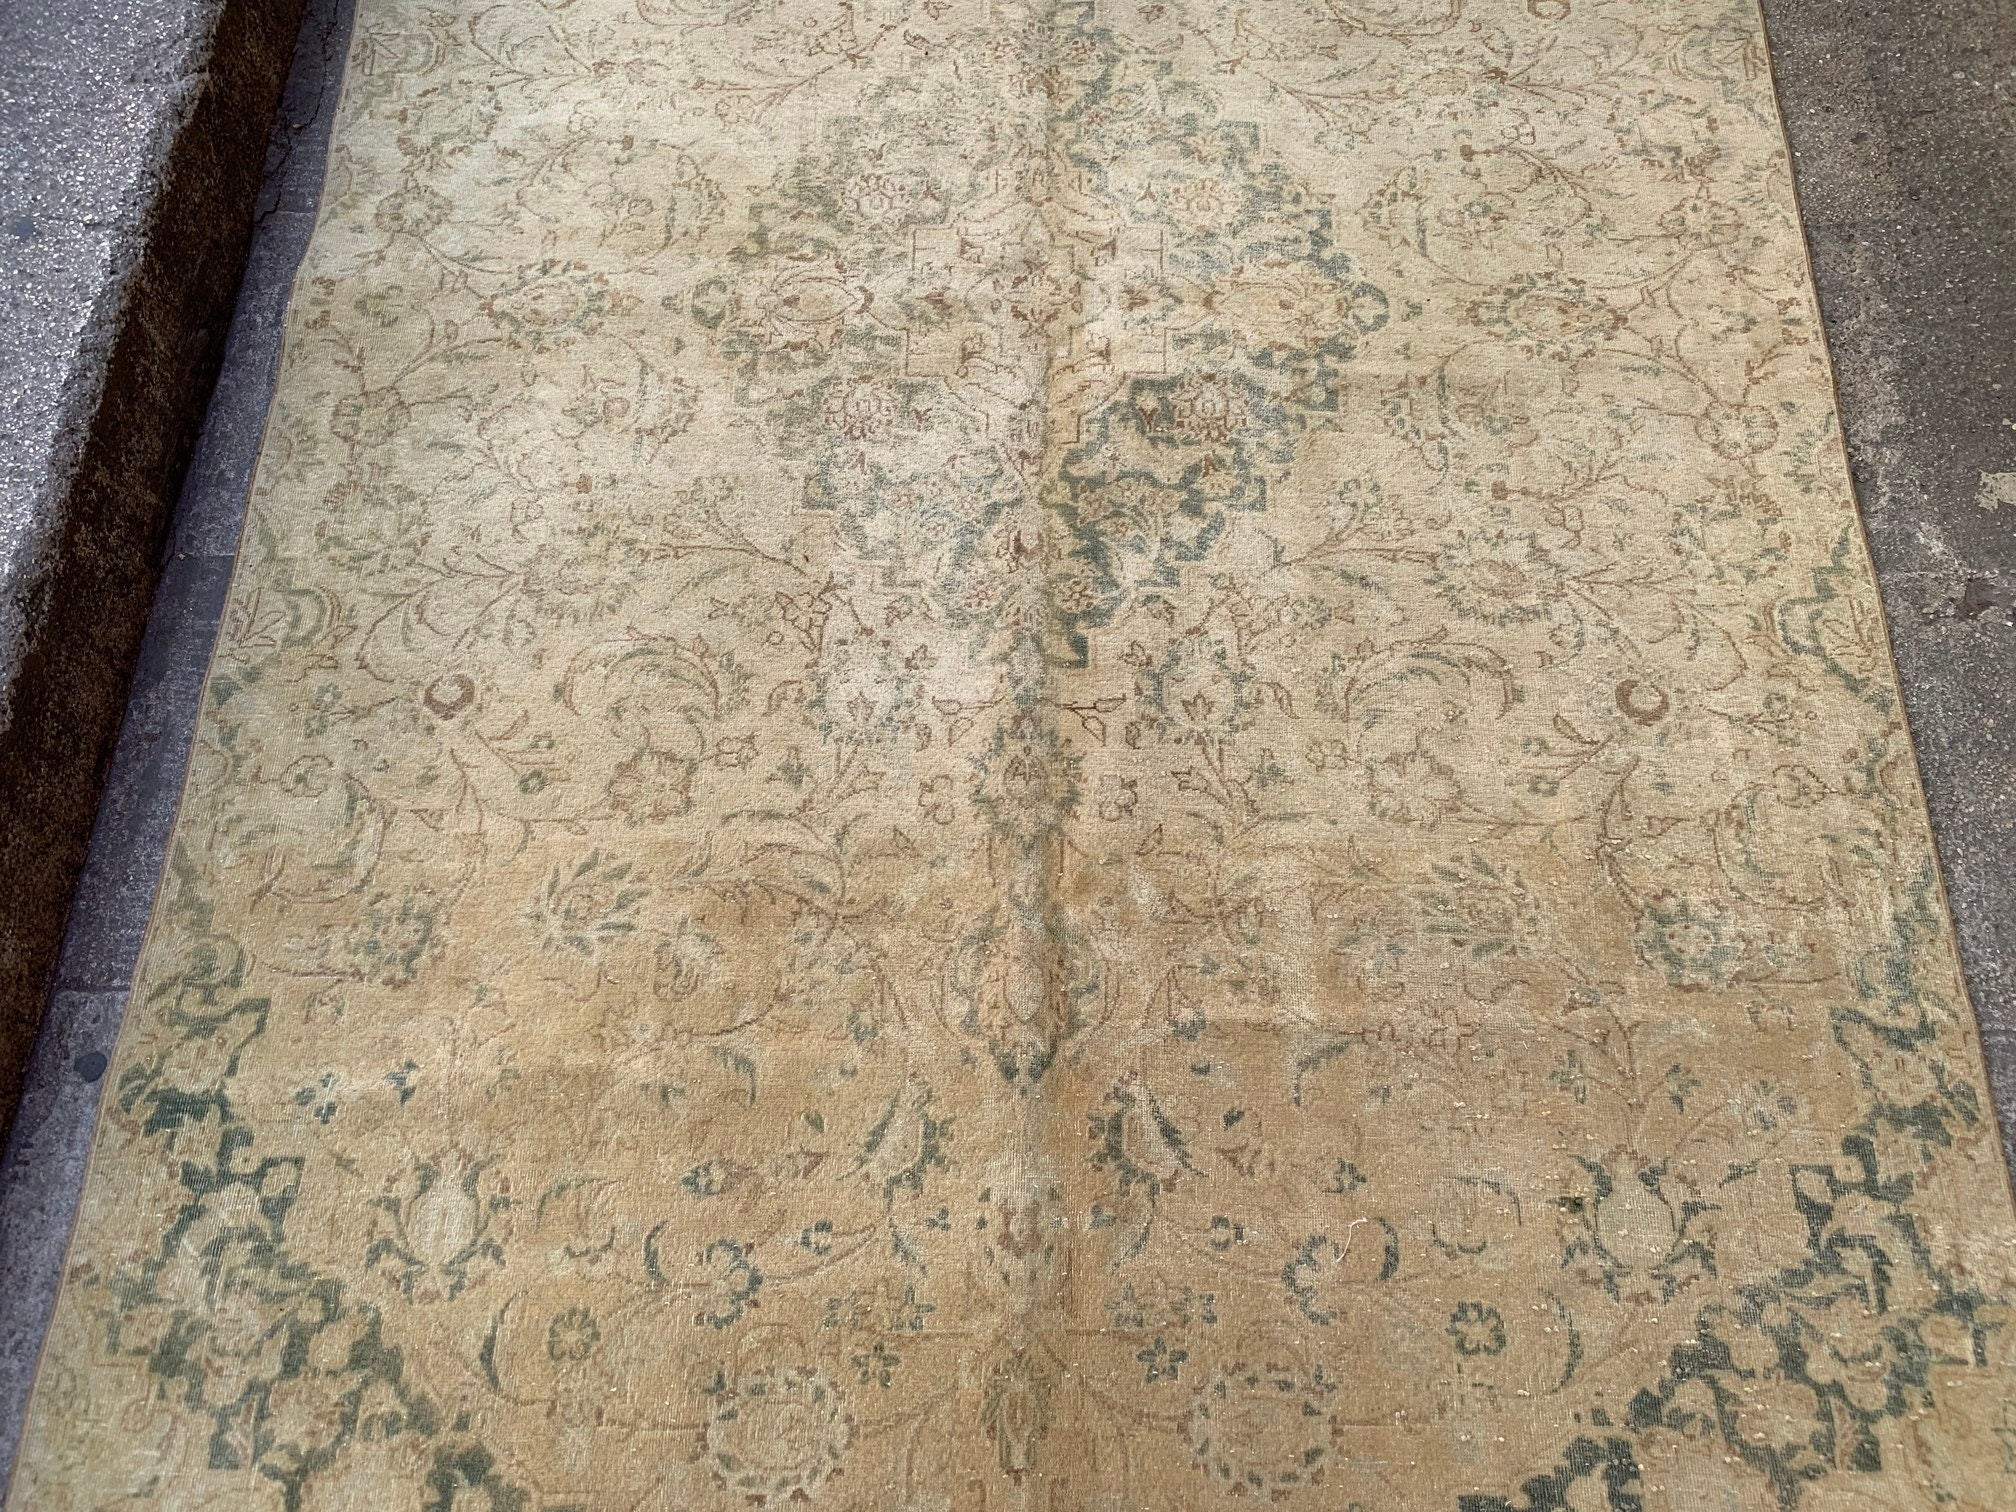 Vintage oriental rug, 5.6x9.8 ft, VP837